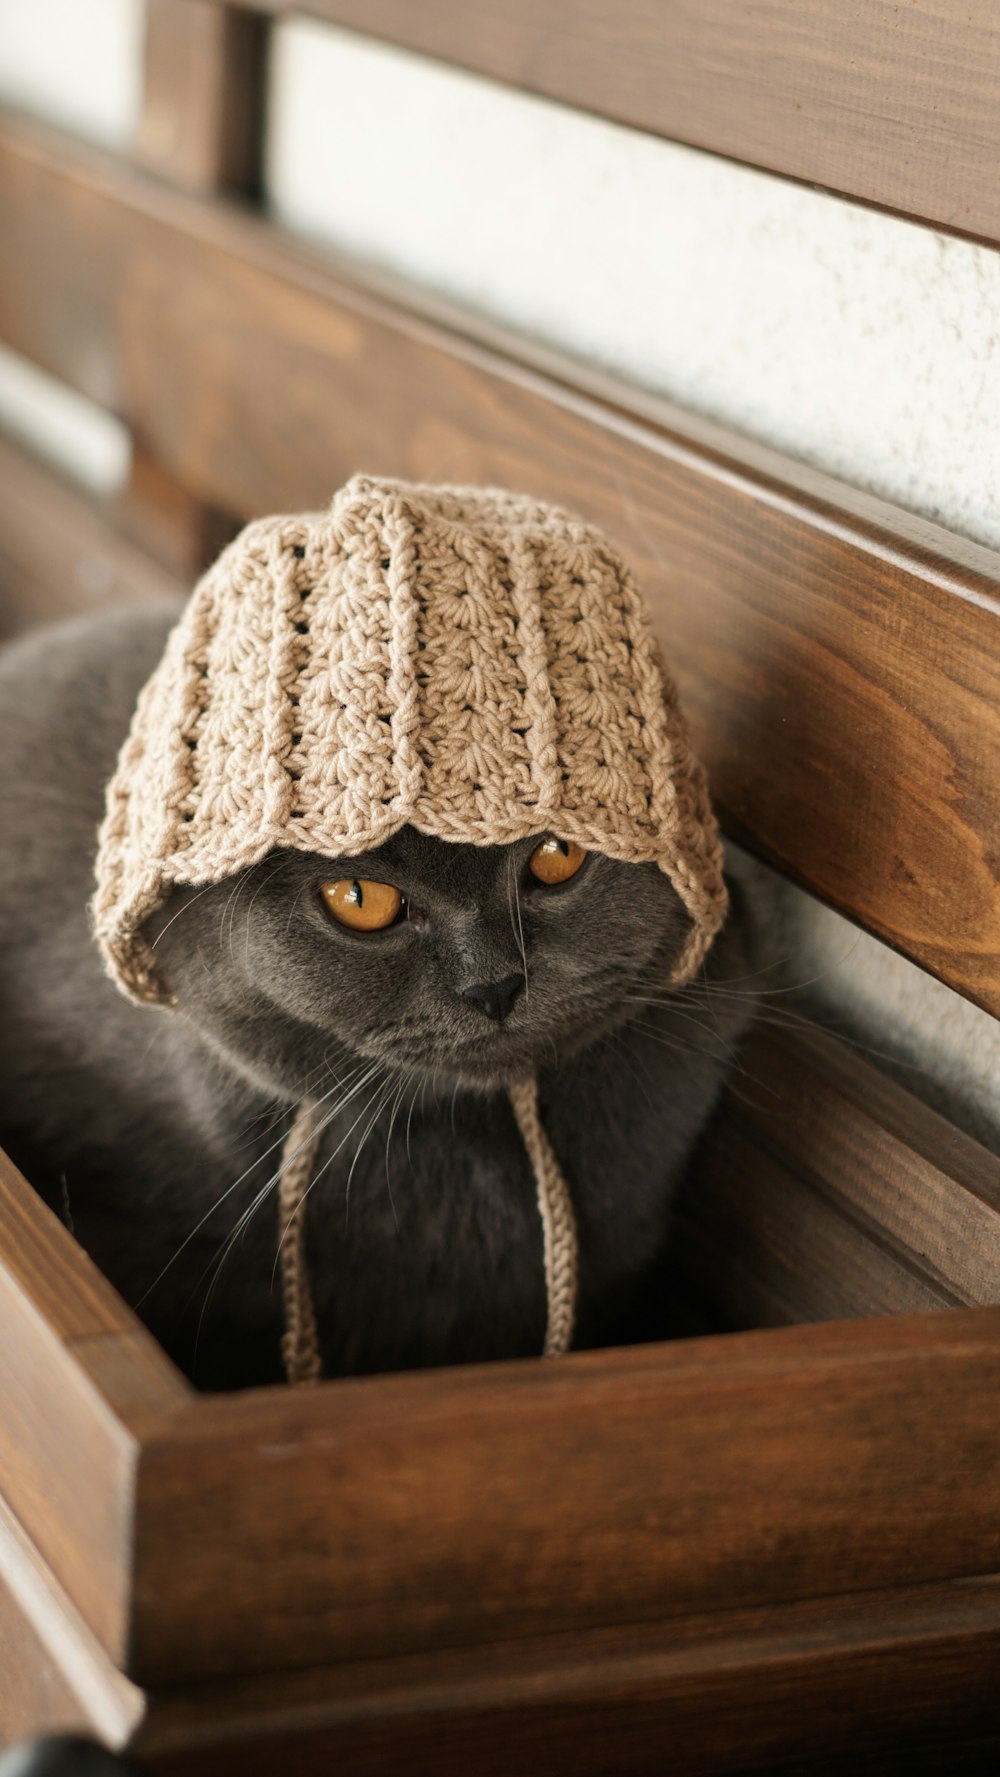 un gatto che indossa un cappello lavorato a maglia seduto su una panchina